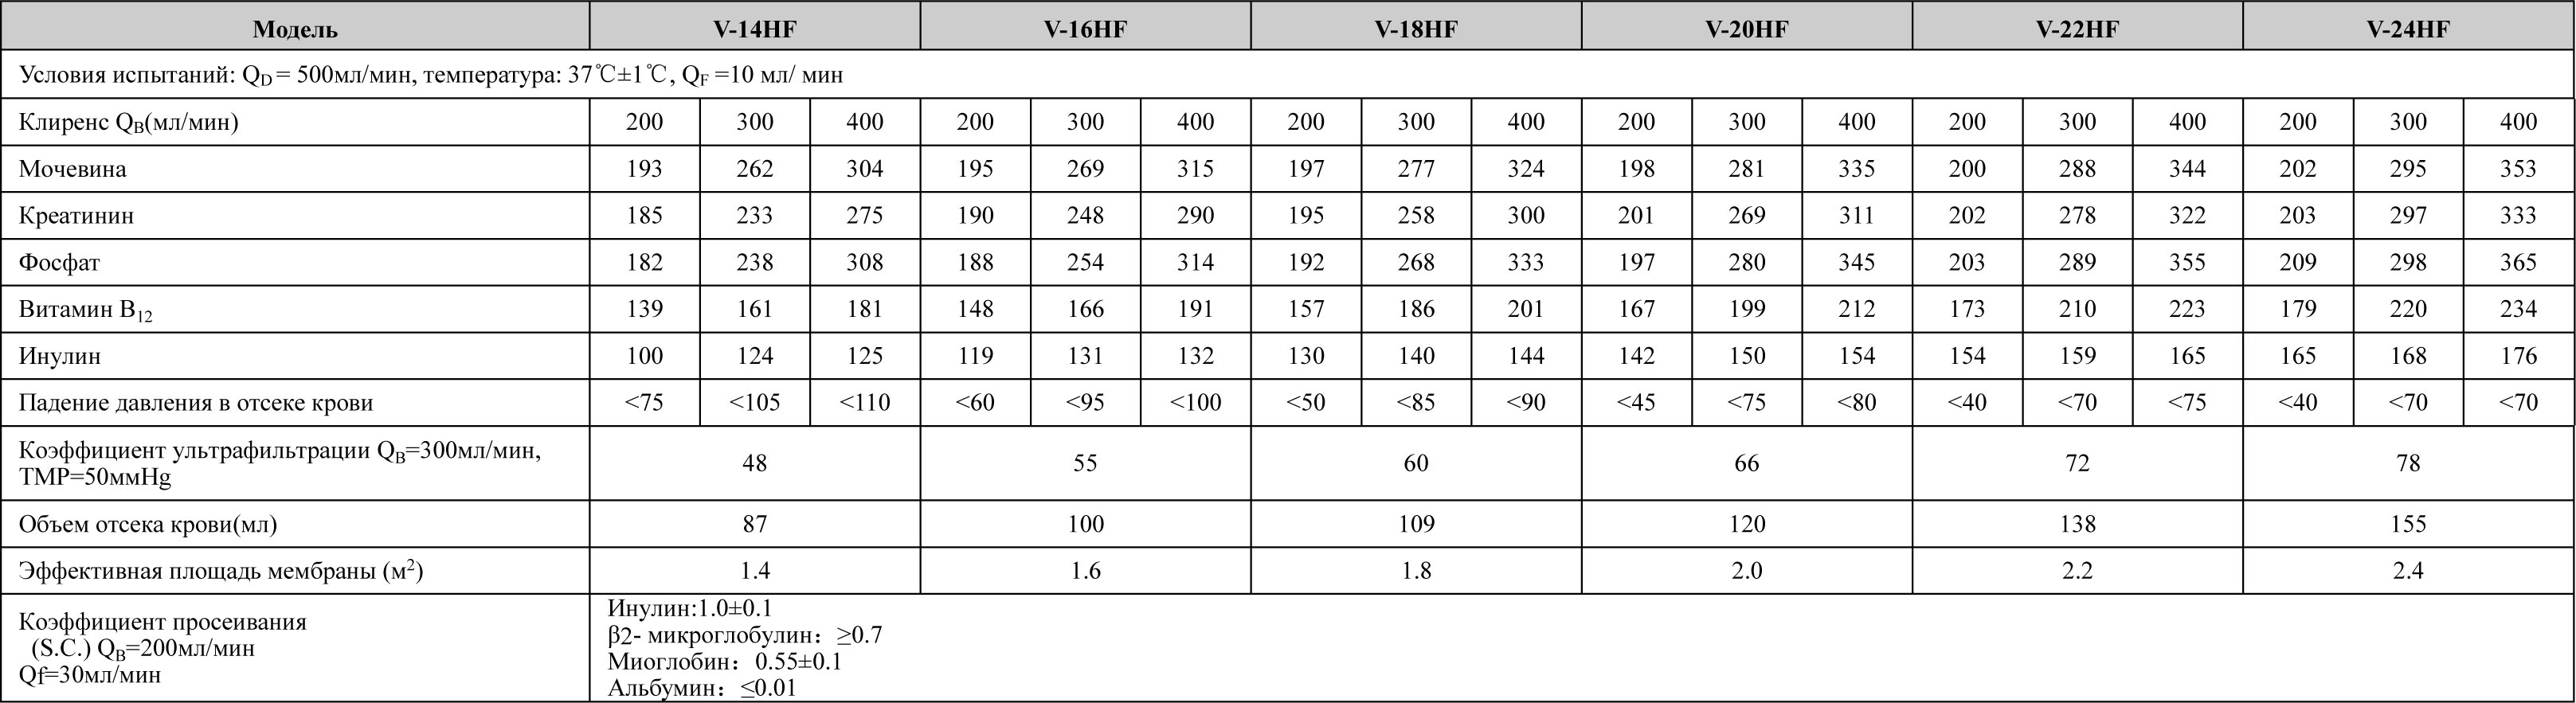 Модели V-14HF, V-16HF, V-18HF, V-20HF, V-22HF, V-24HF